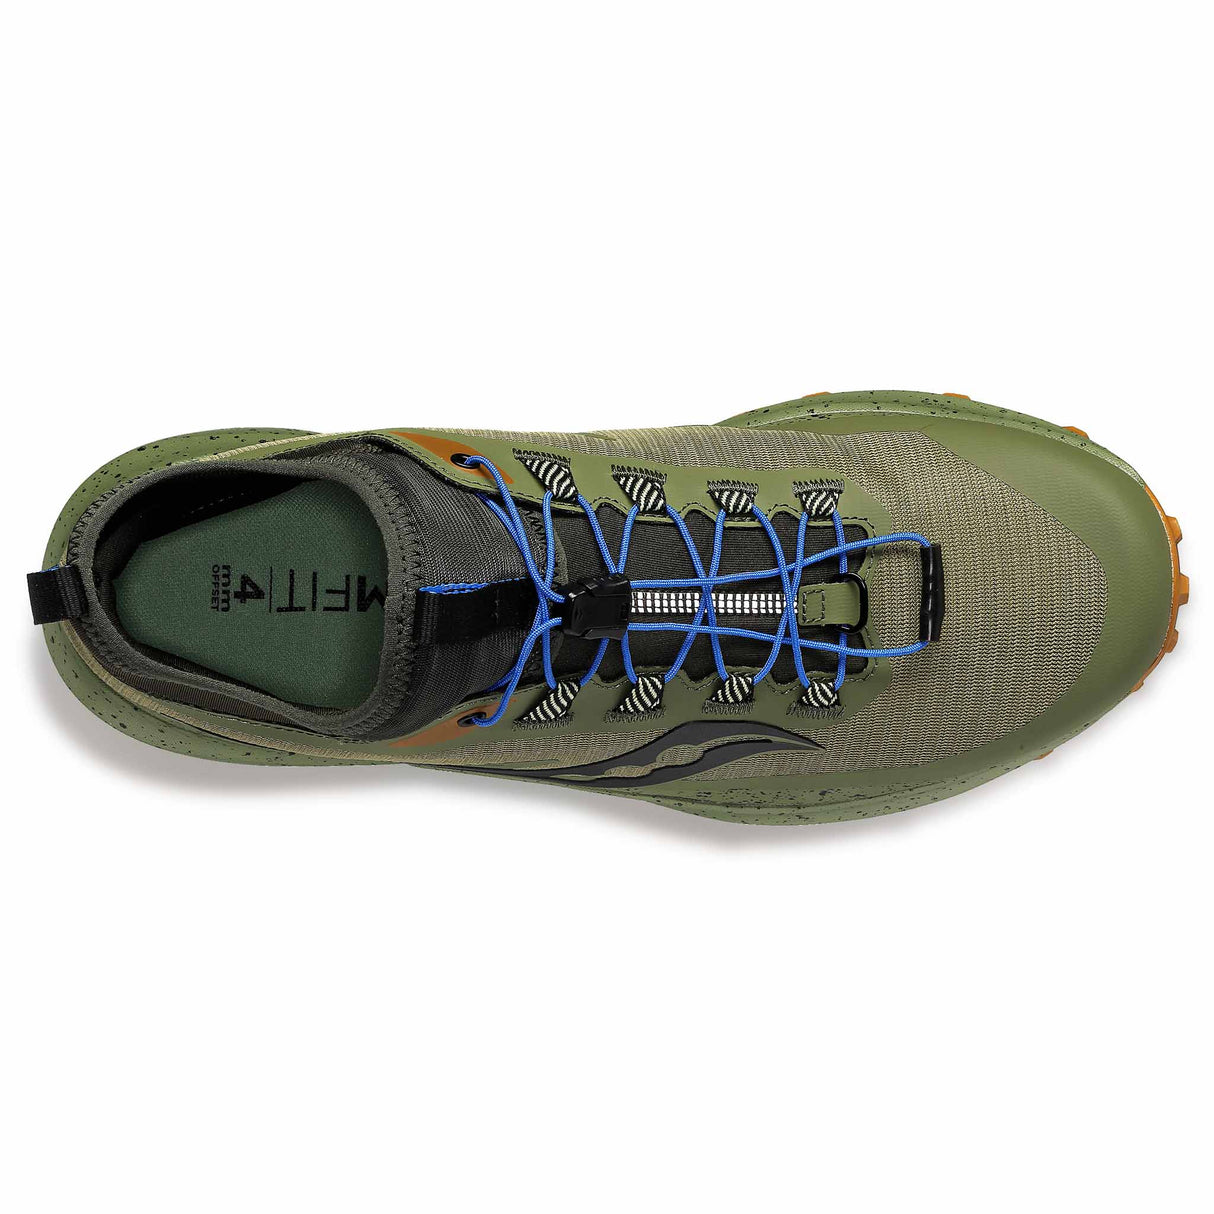 Saucony Peregrine 13 ST chaussures de course à pied trail homme - Glade / Bronze